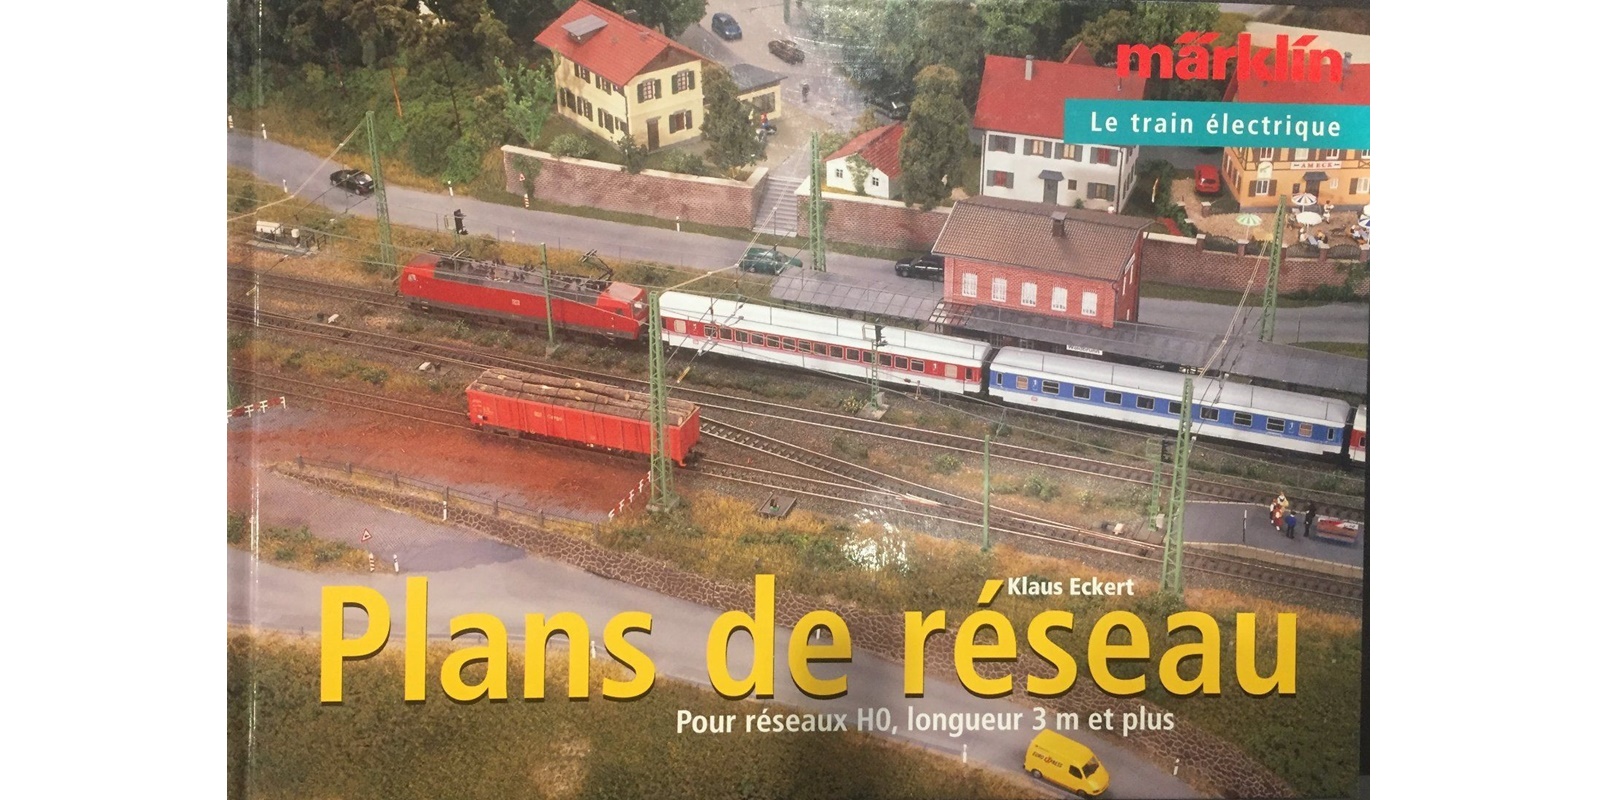 07453 ... Gleisplanbuch C-Gleis. Französische Ausgabe.